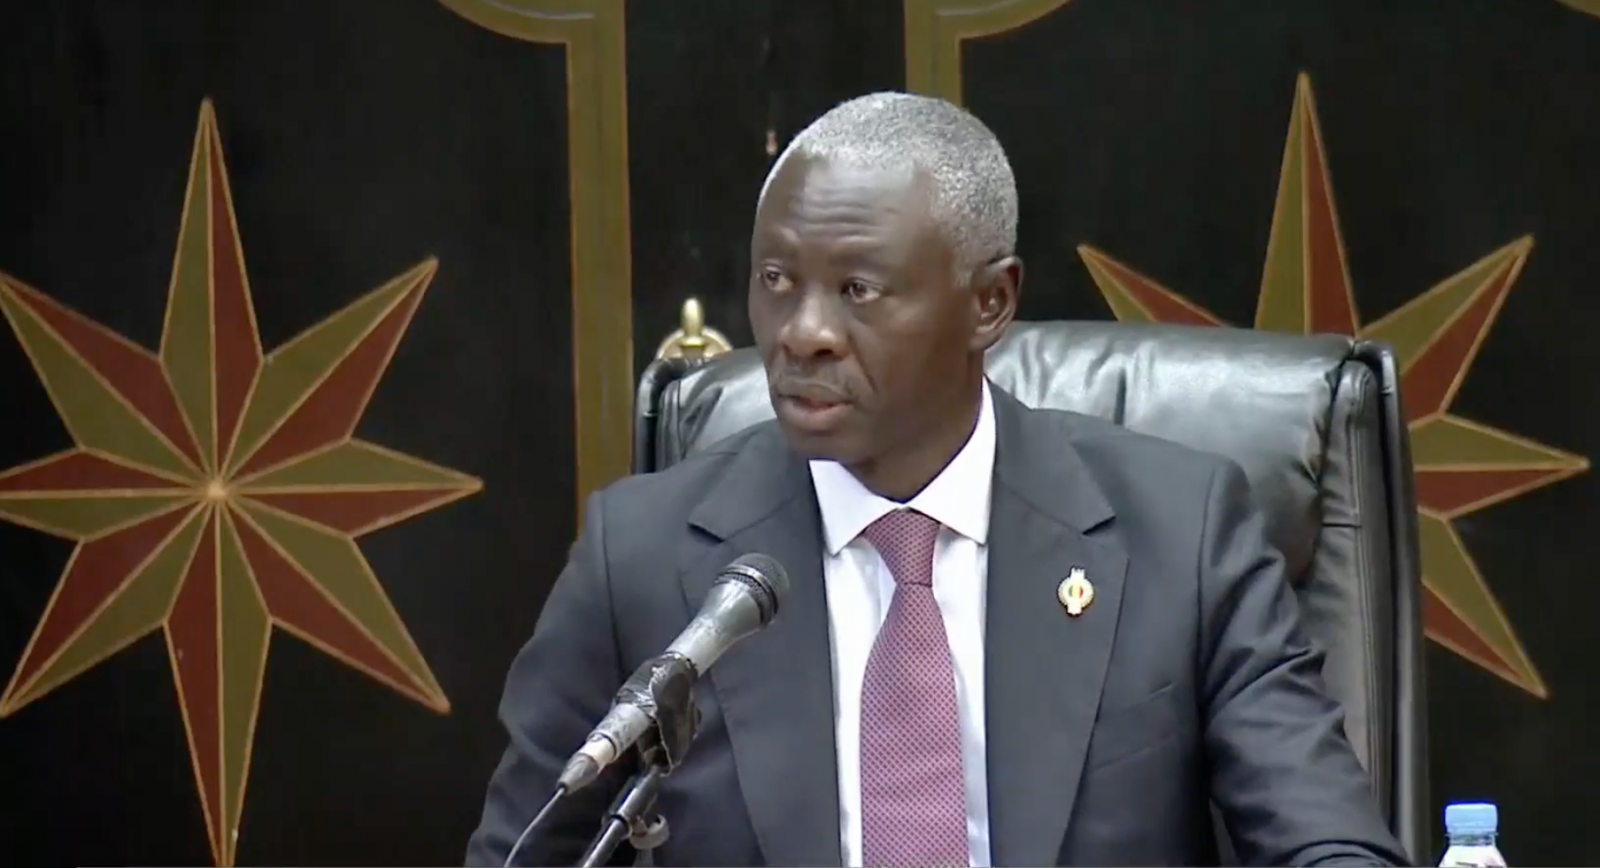 Le président de l'Assemblée nationale du Sénégal réitère le soutien ferme de son pays à la marocanité du Sahara